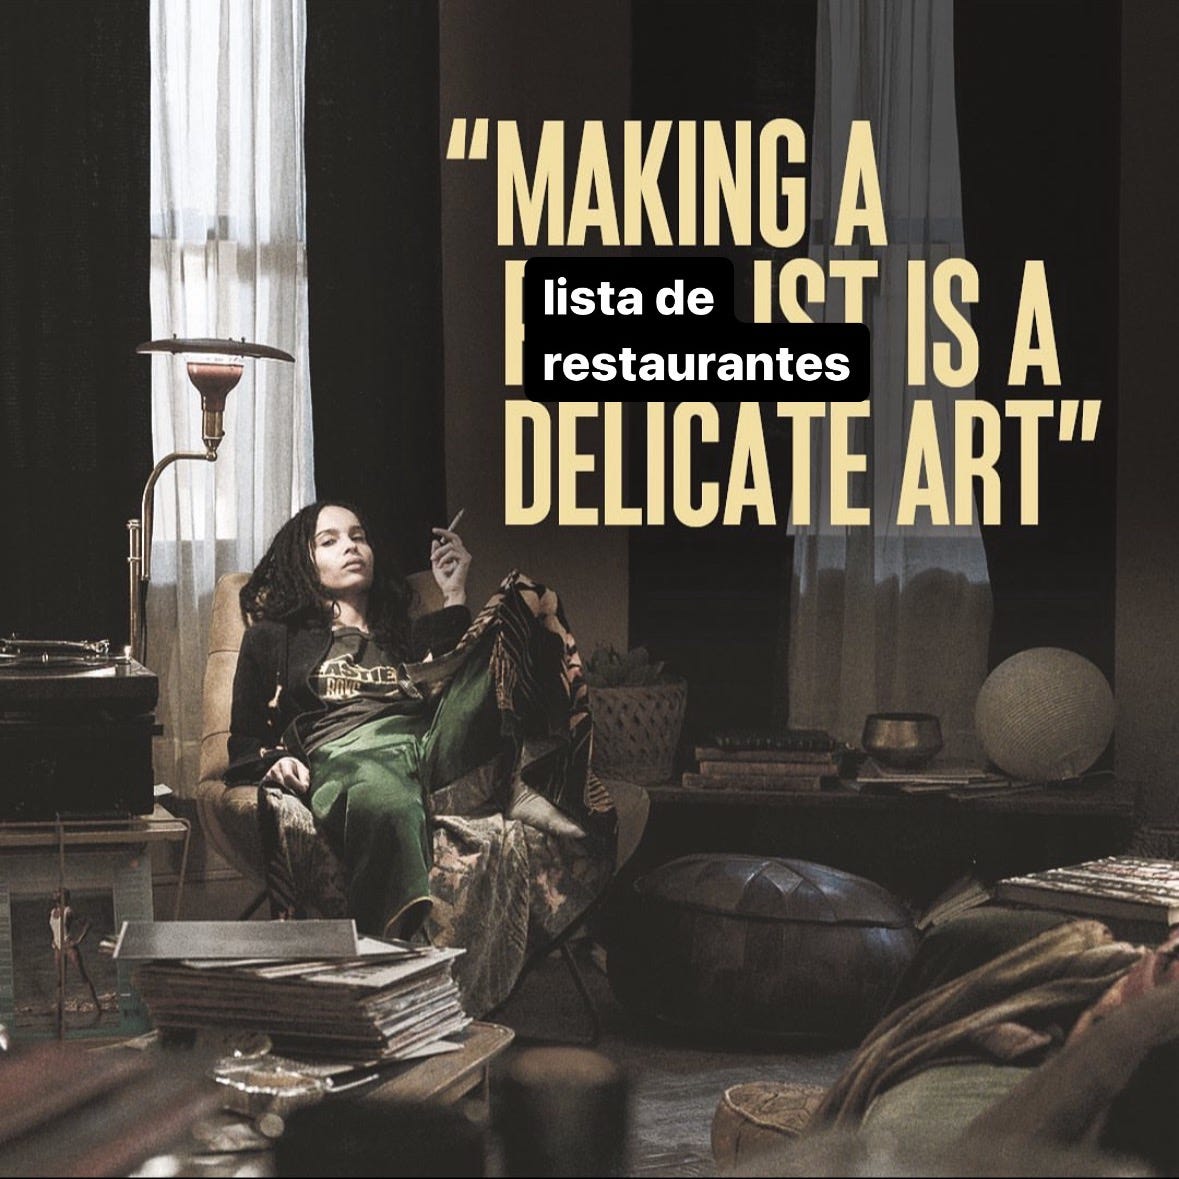 Zoe Kravitz como Rob em Alta Fidelidade deitada numa poltrona ao lado de uma vitrola. A frase "Making a playlist is a delicate art" é alterada para "Making a lista de restaurantes is a delicate art"